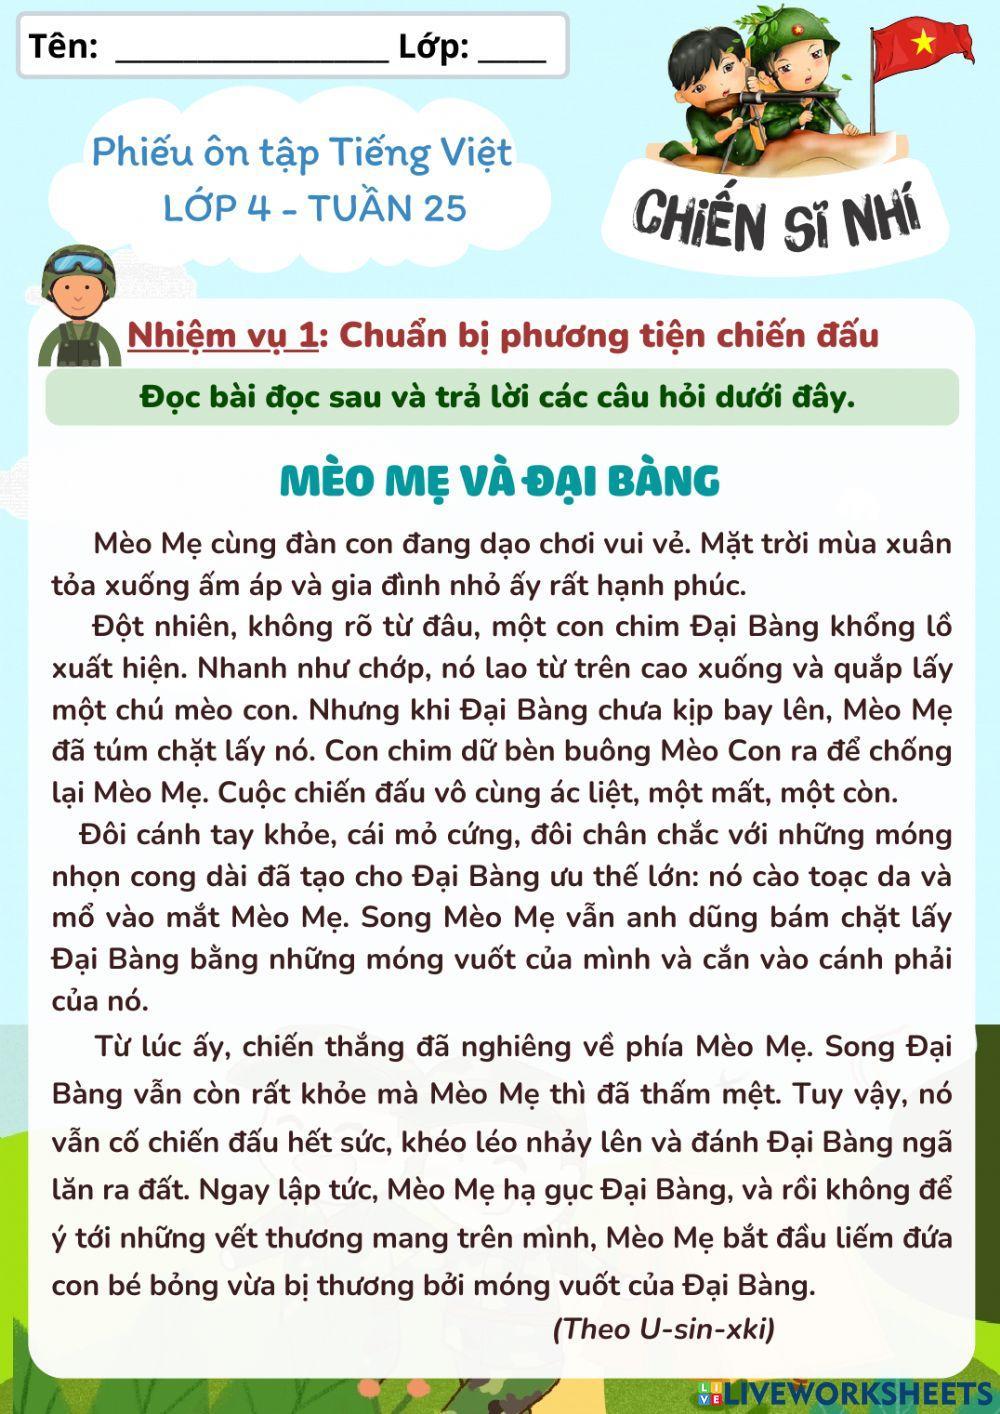 Phiếu ôn tập Tiếng Việt lớp 4 tuần 25